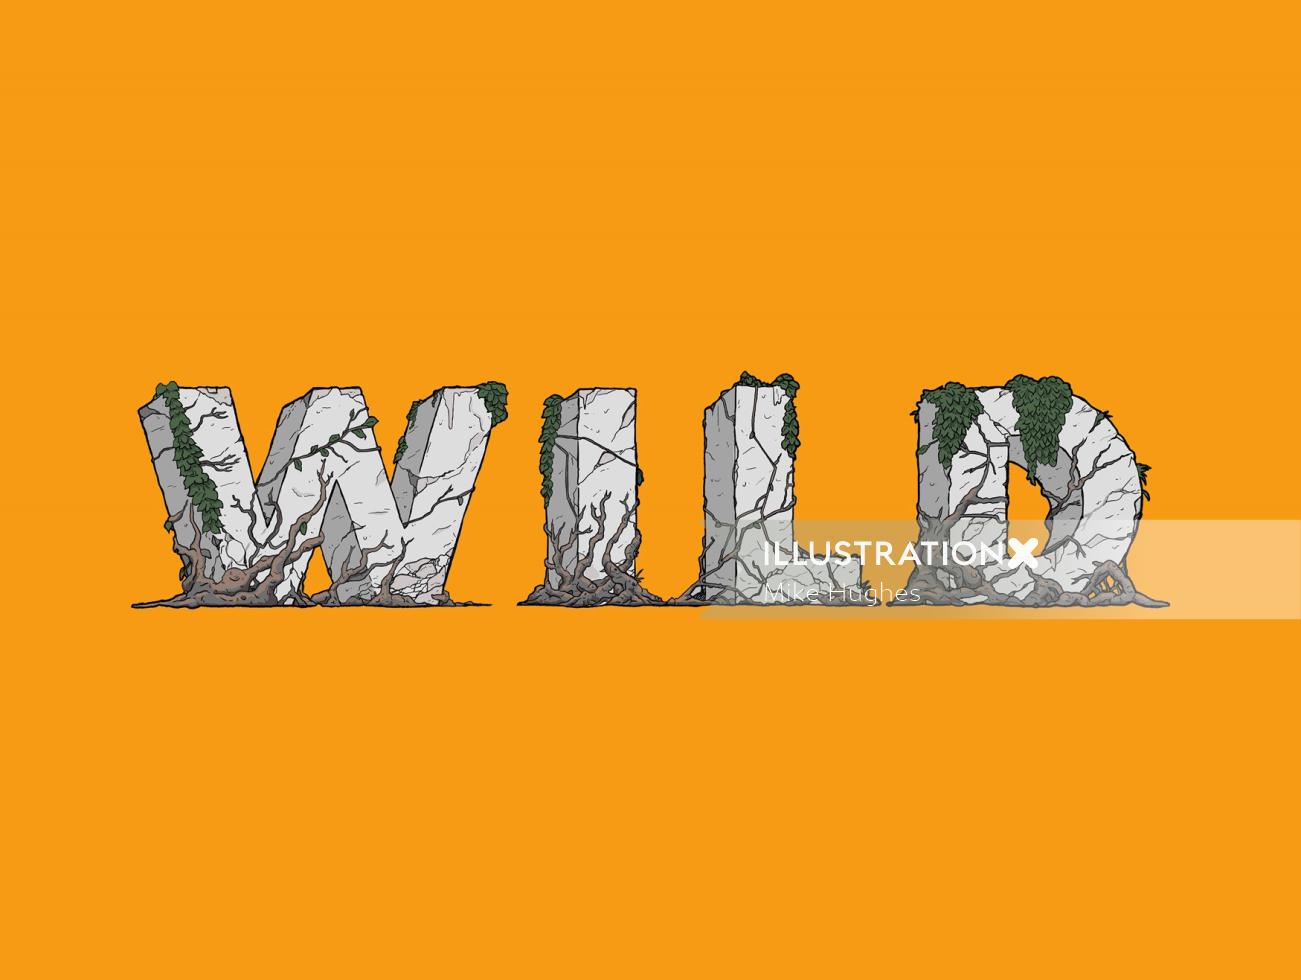 Wild typography